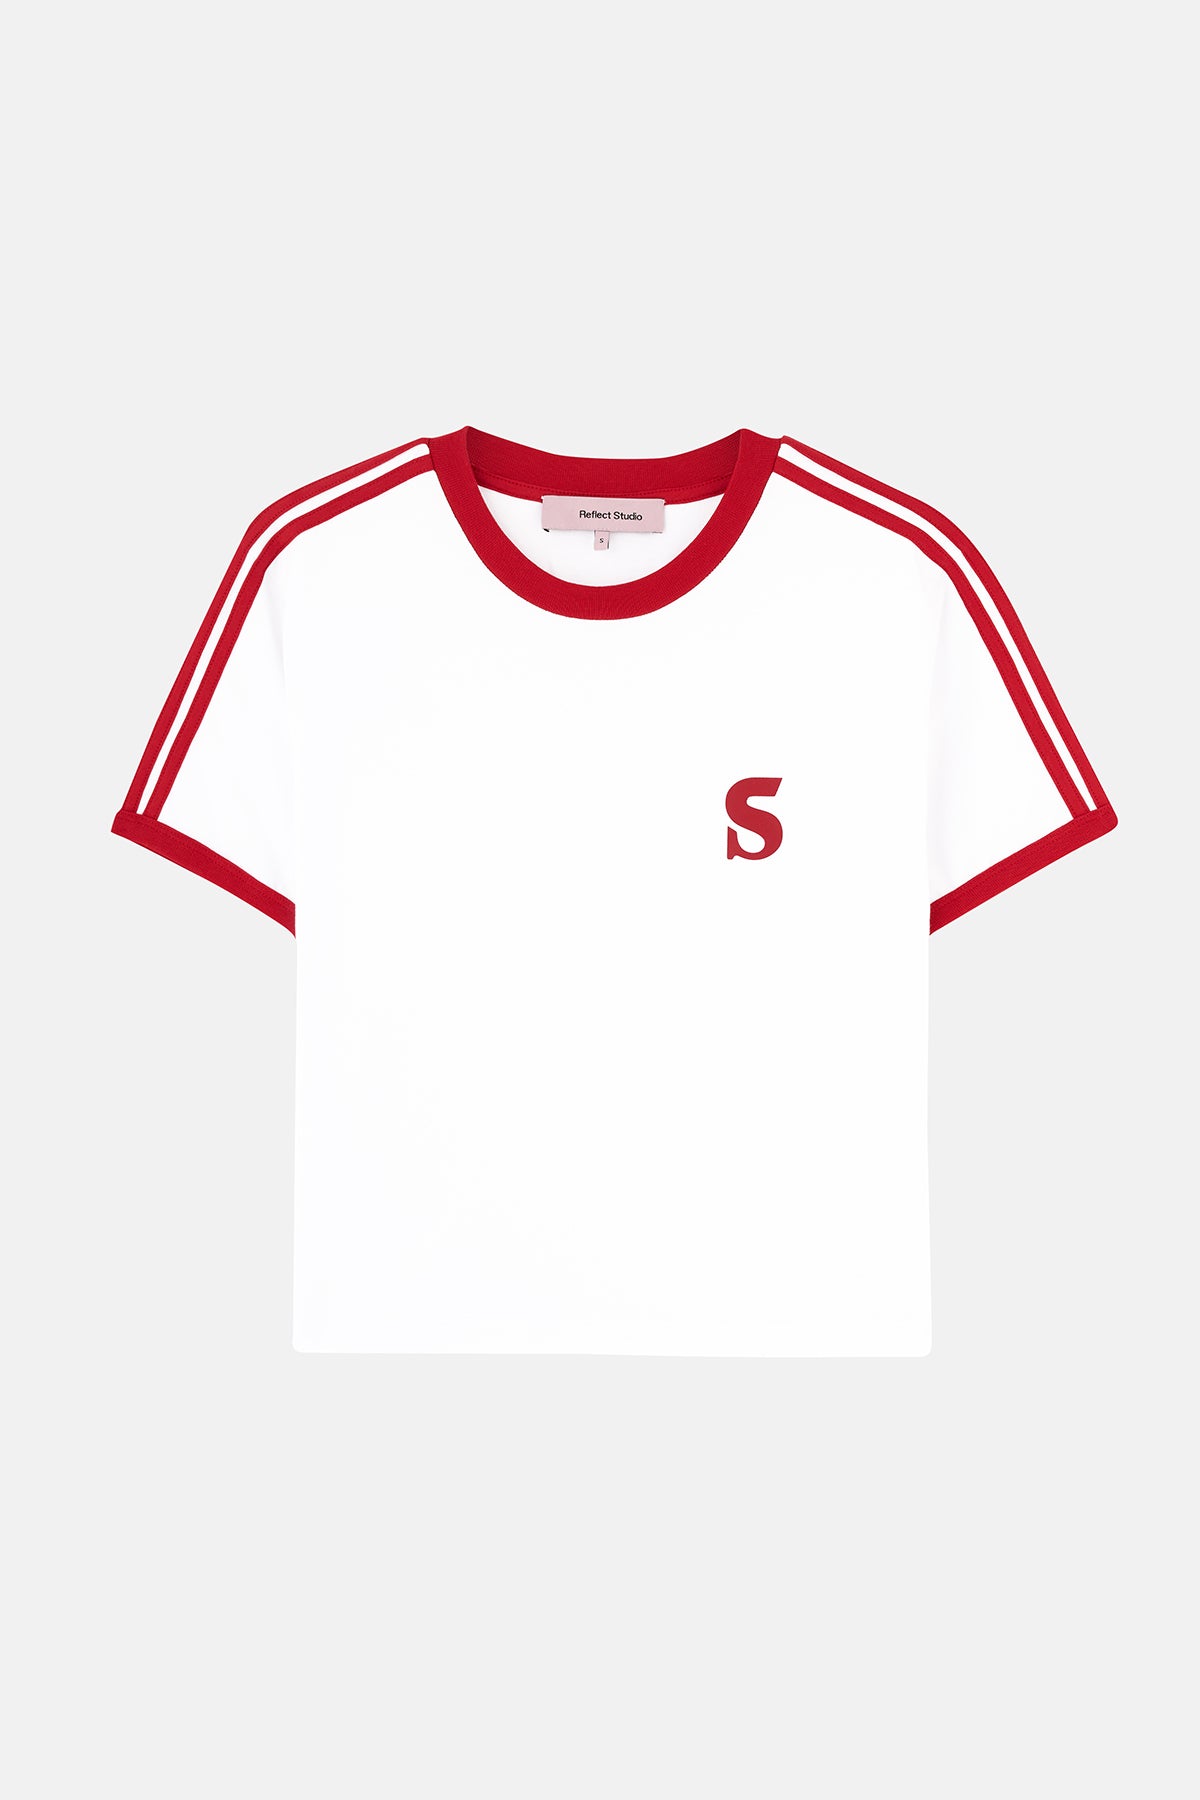 Socrates Logo Supreme Kadın T-shirt - Beyaz